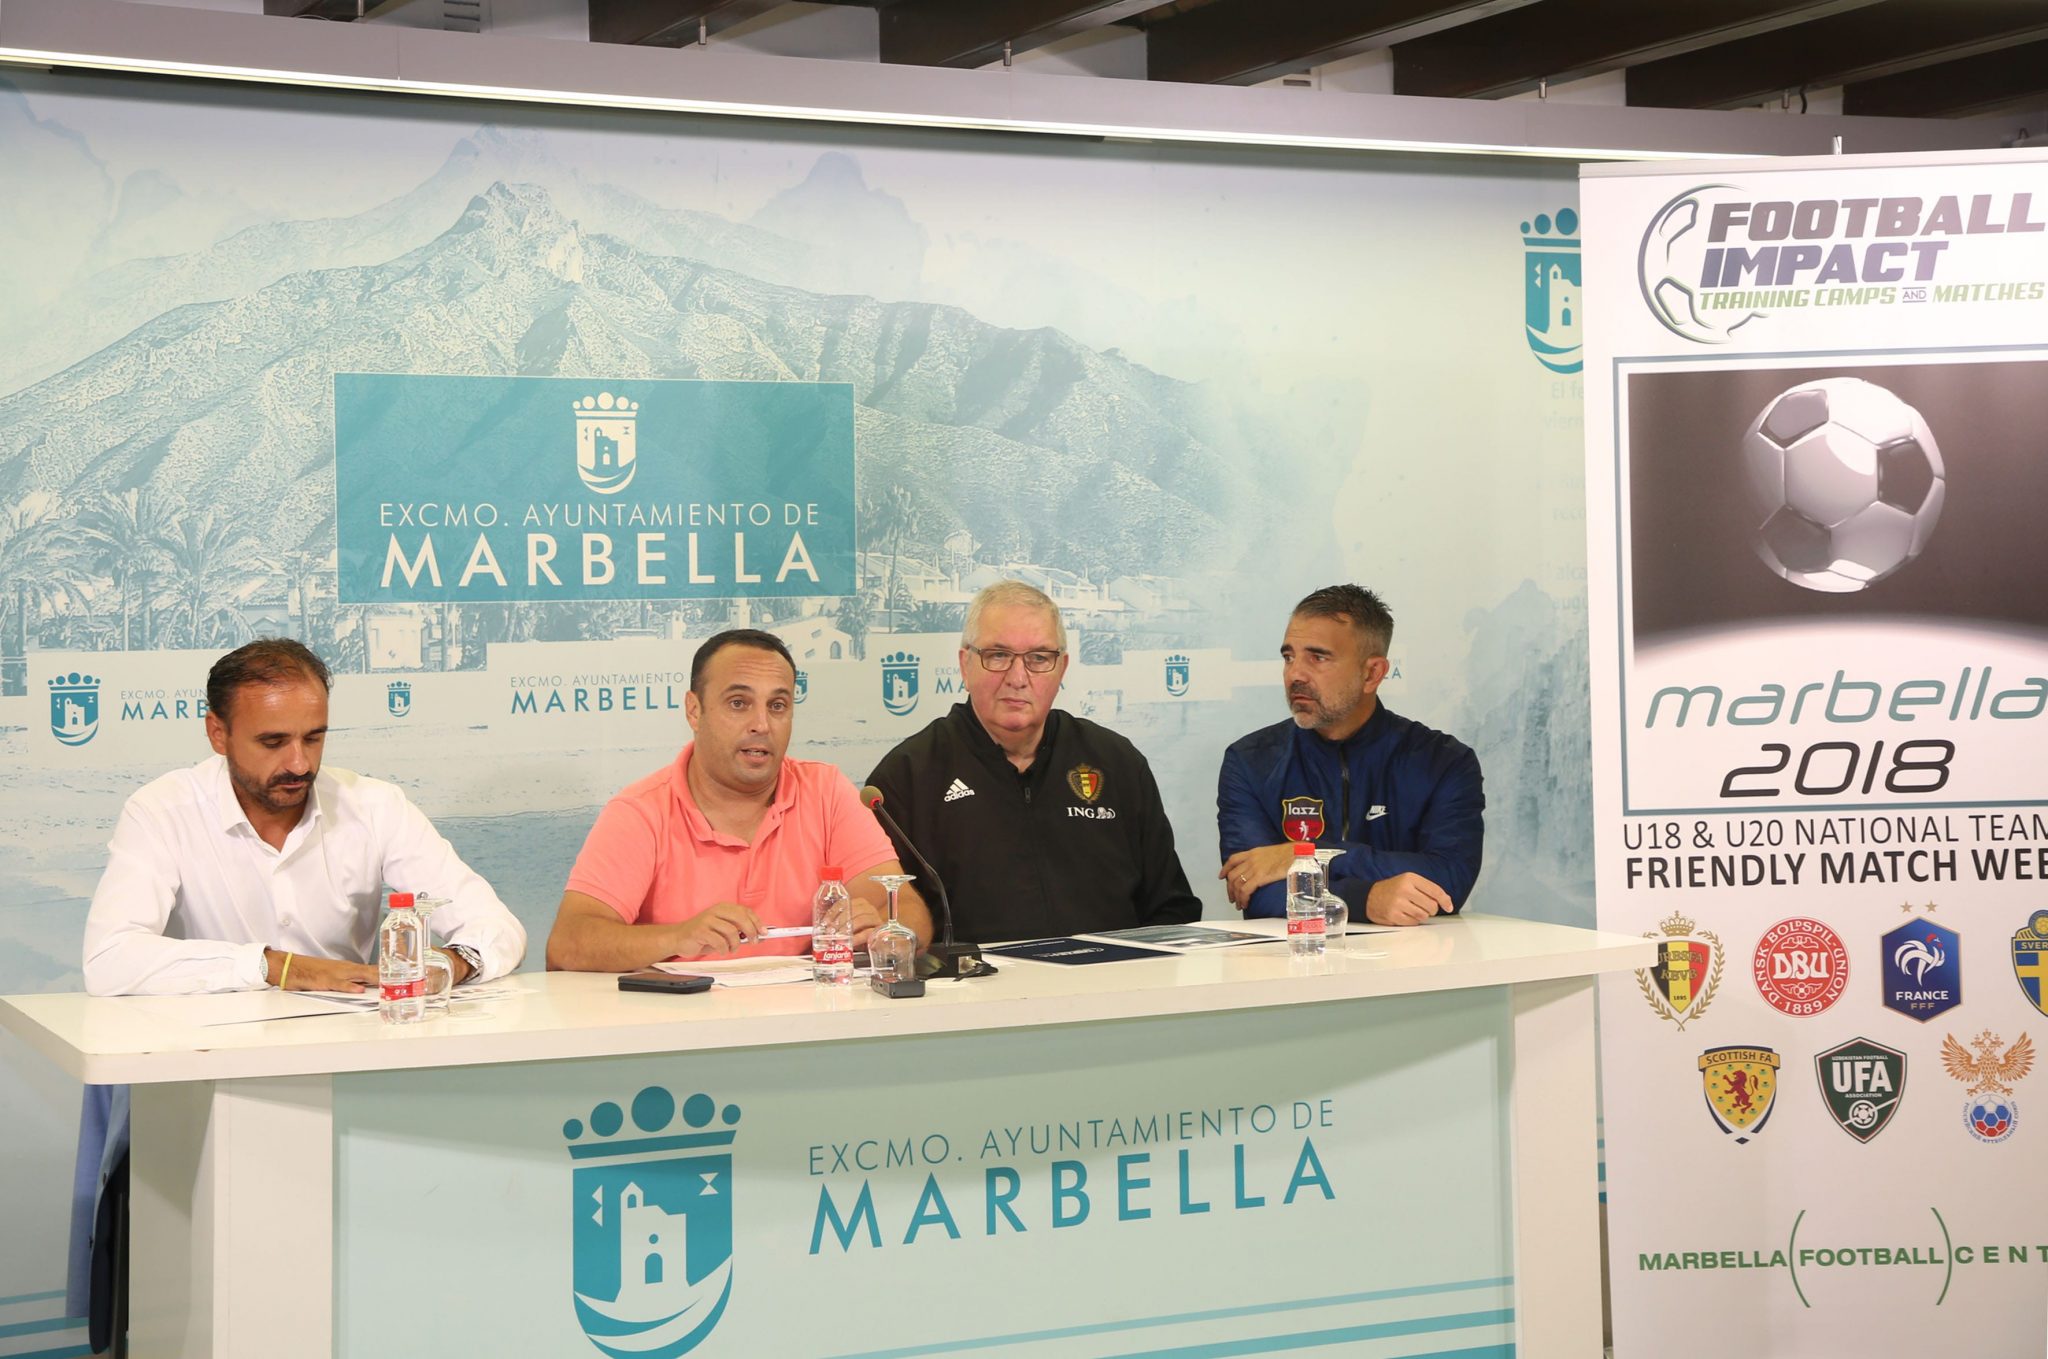 Football Impact reunirá en Marbella a siete selecciones de fútbol sub 18 y 20